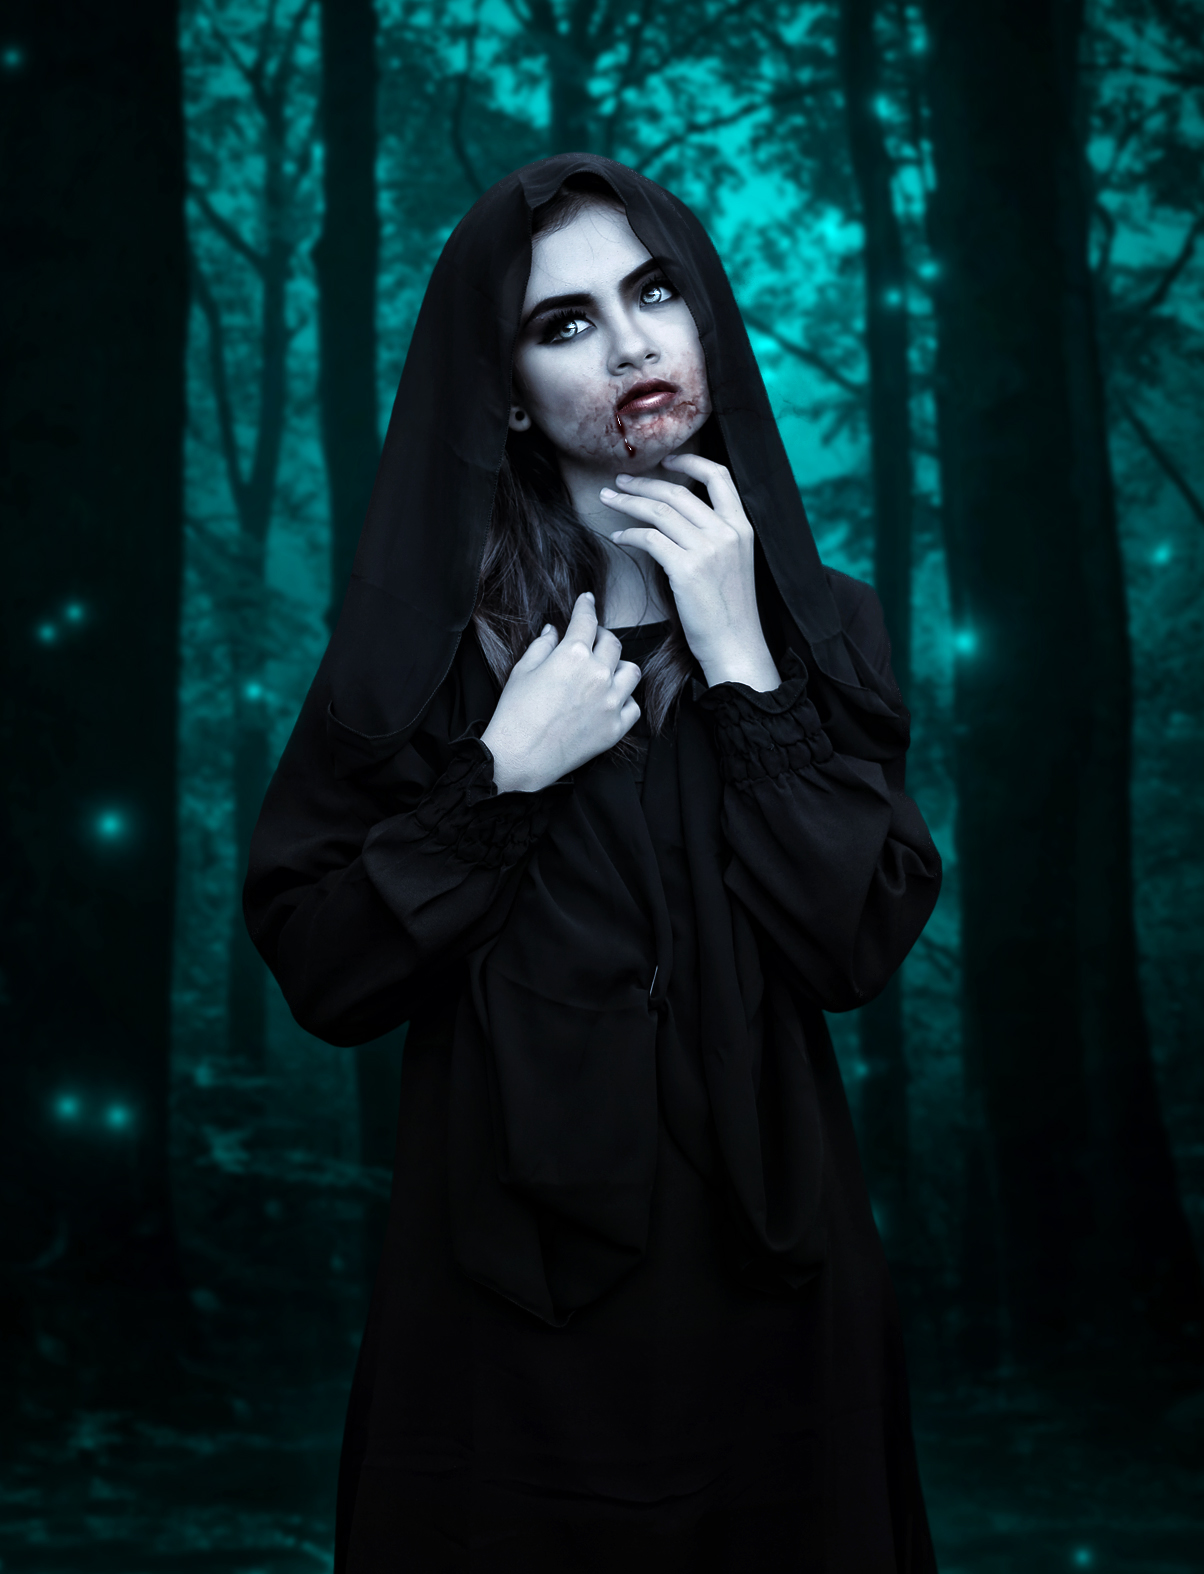 Vampire Beauty by SamBriggs on DeviantArt